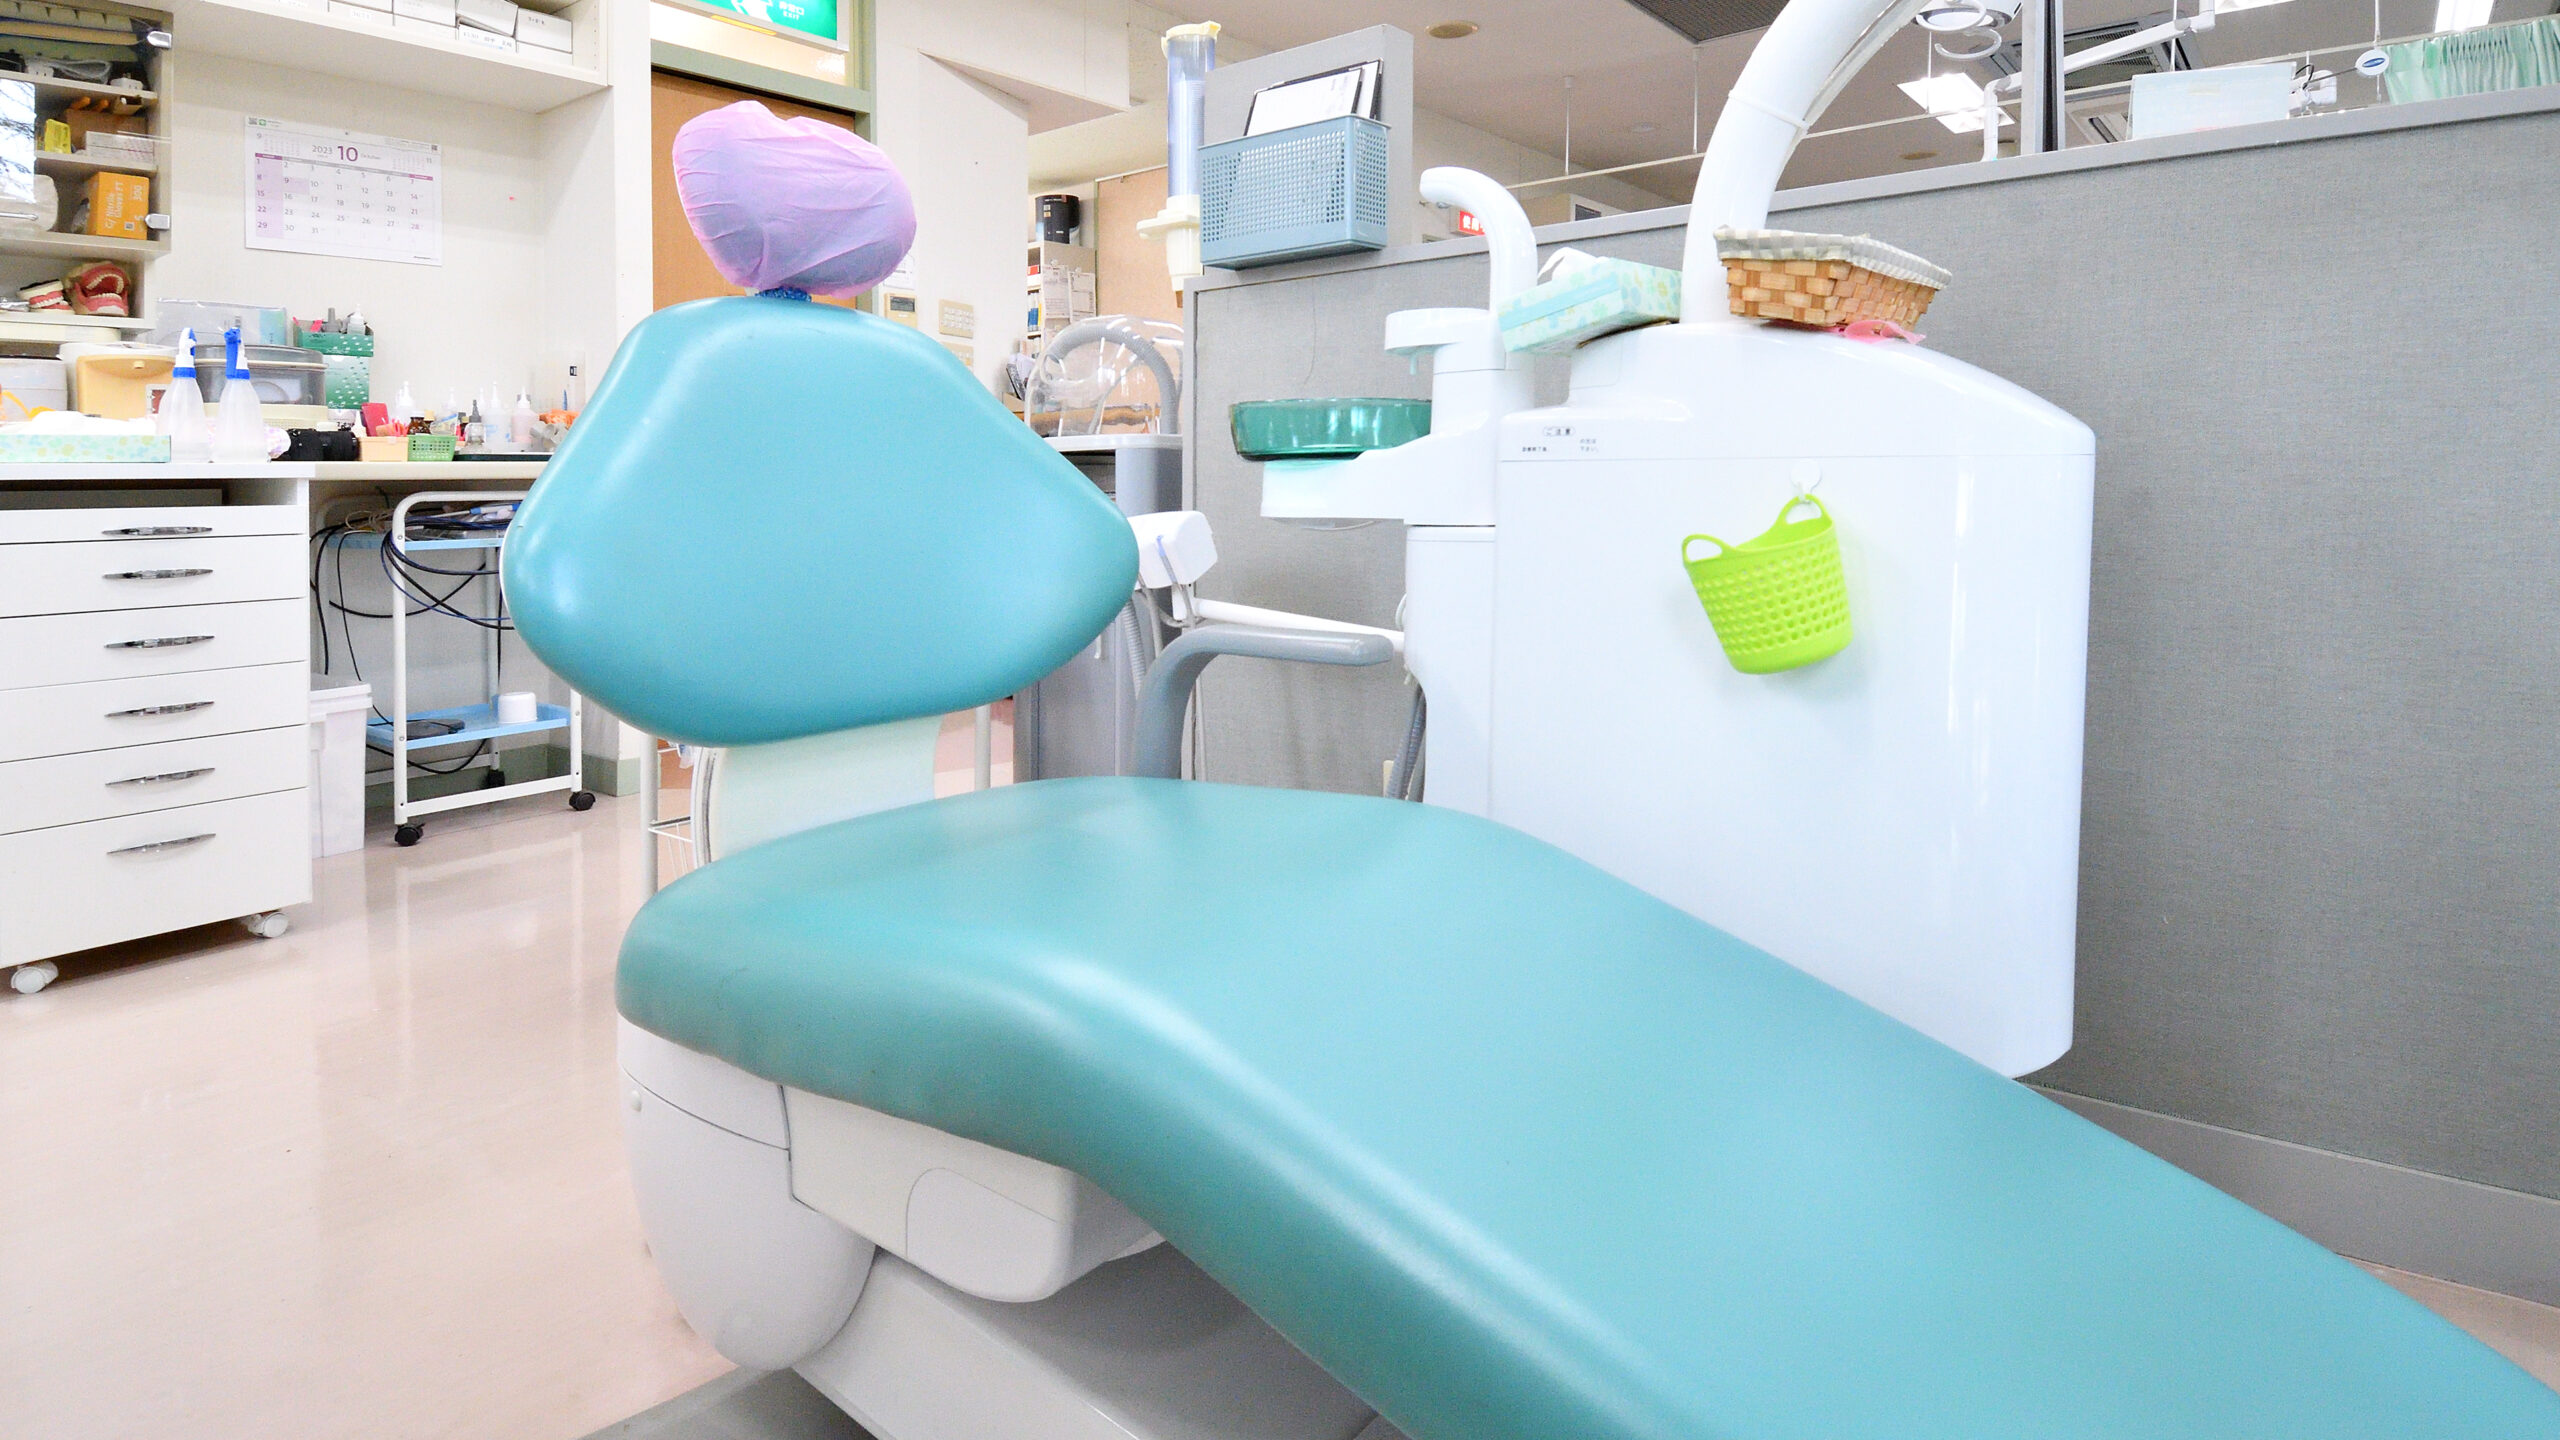 右前から撮影されたひぐち歯科医院で歯科治療に使用される患者様用のユニット